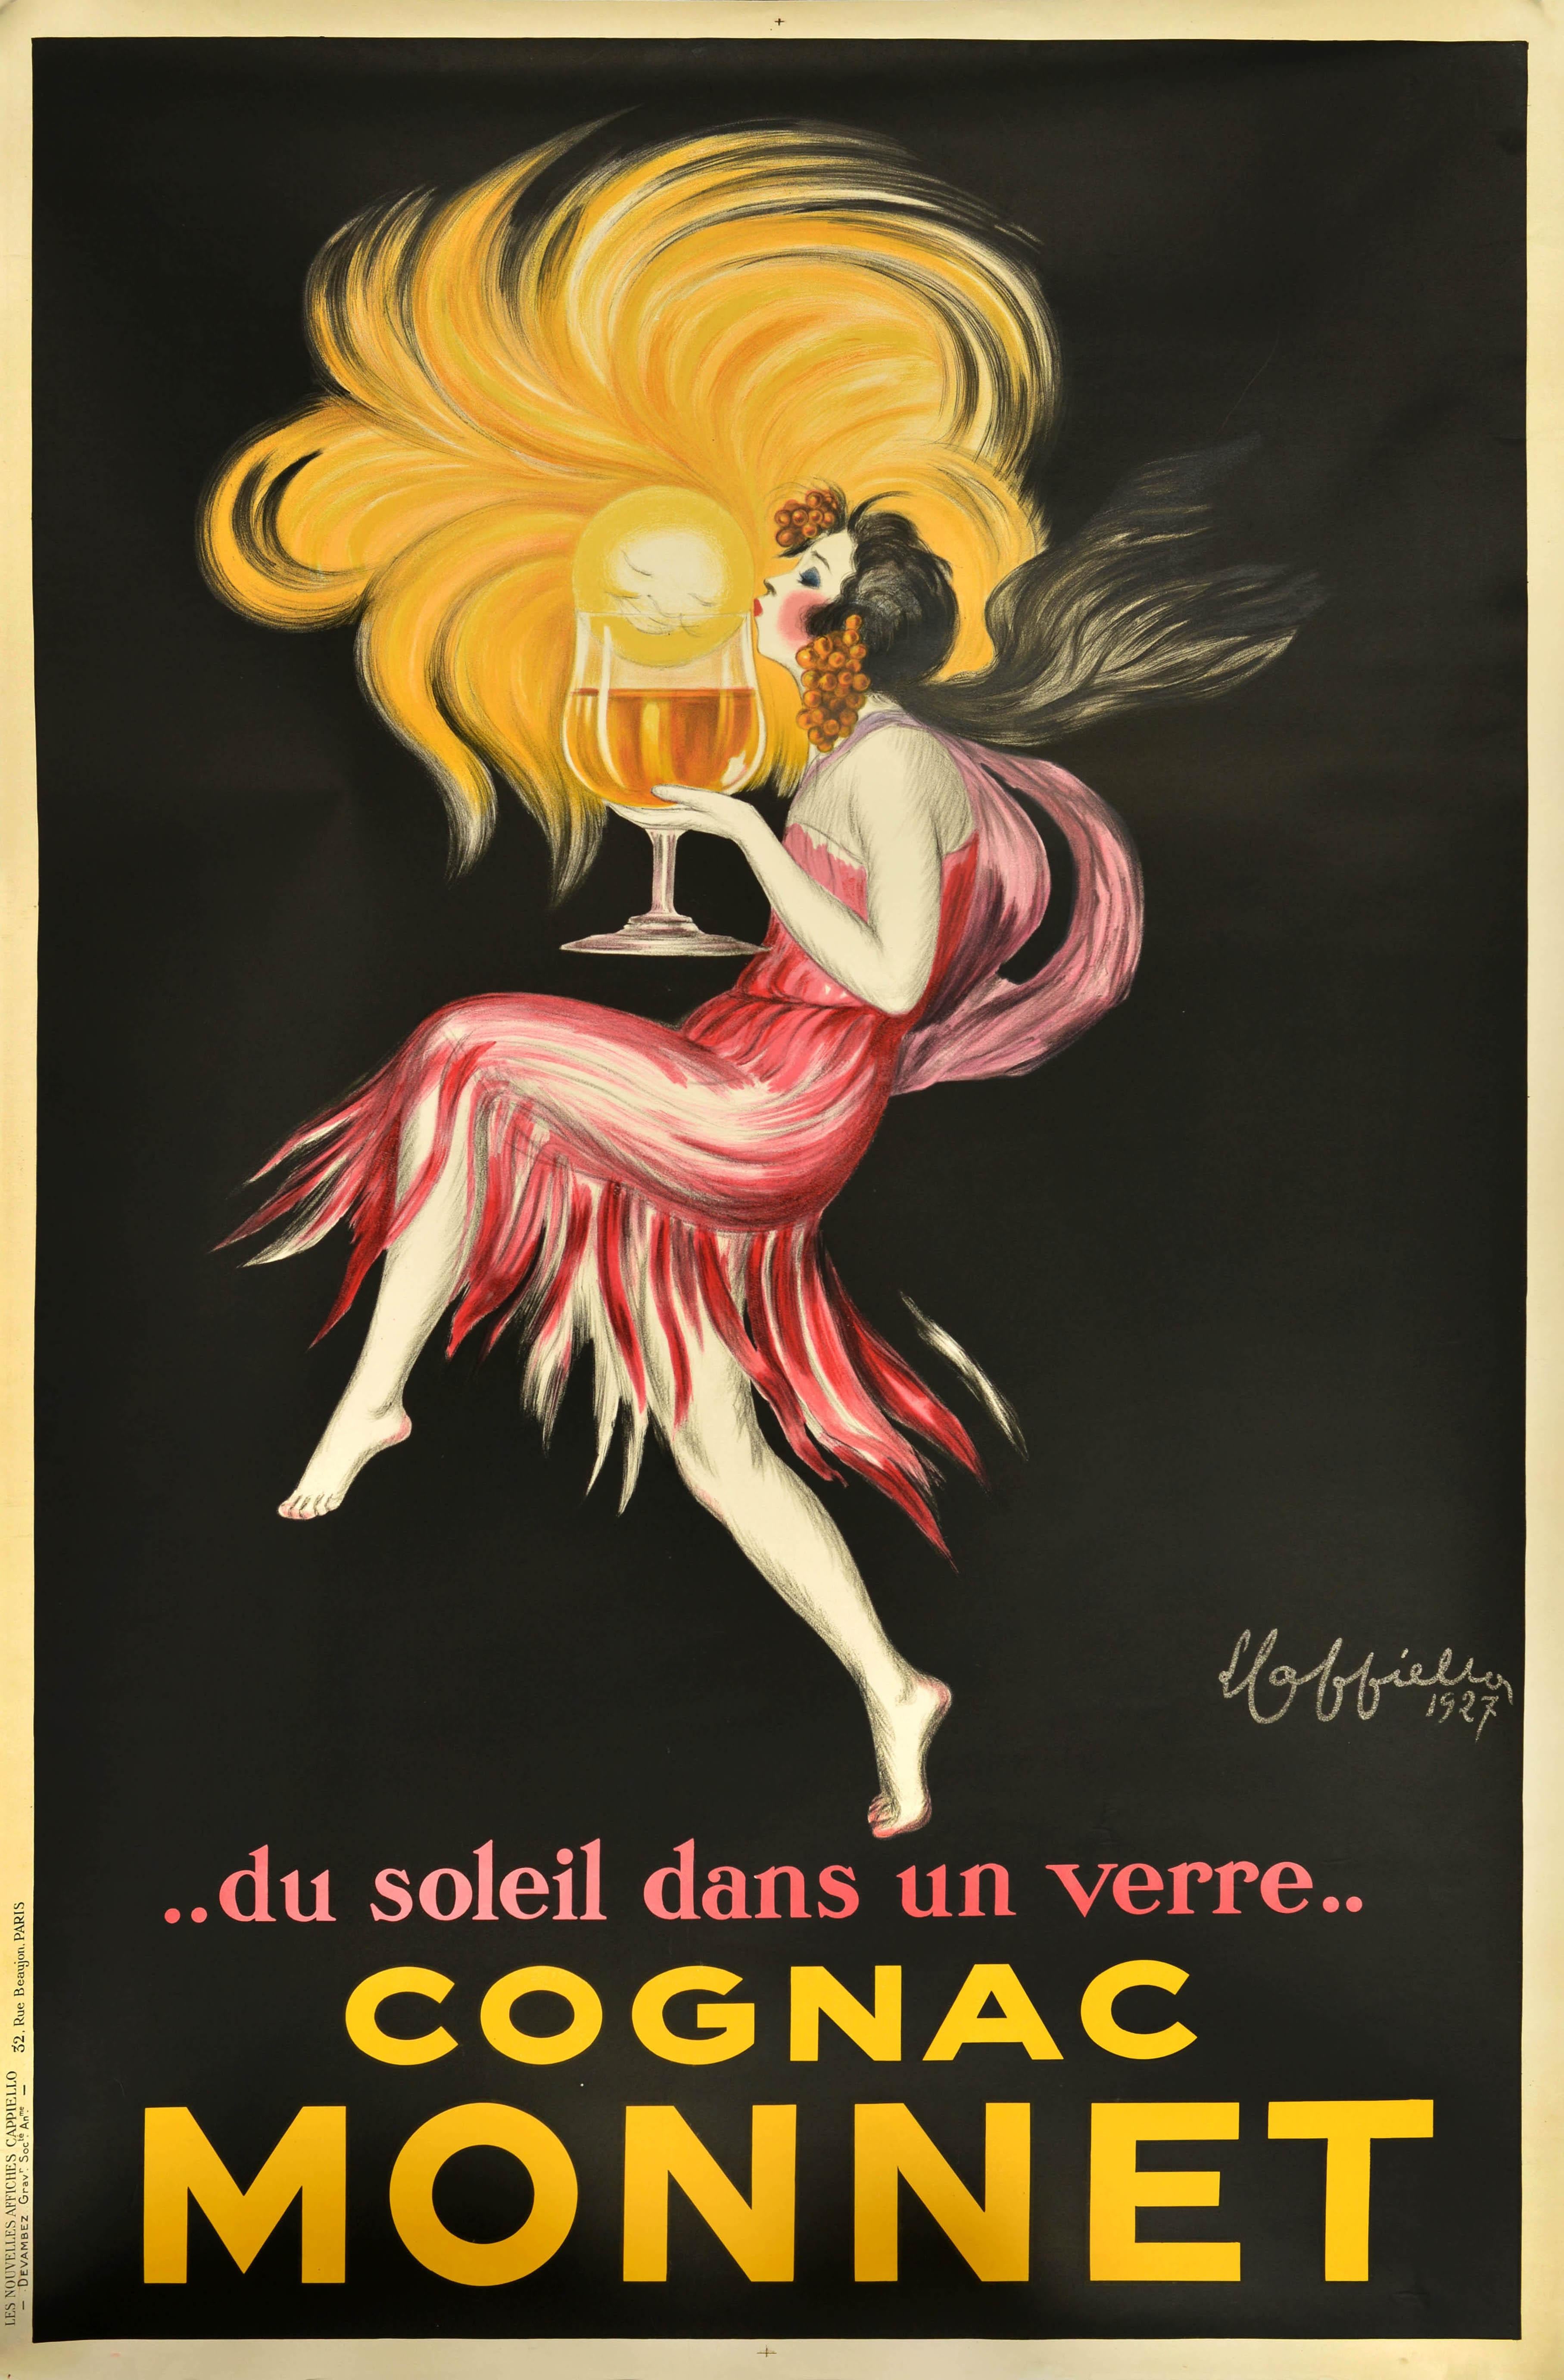 Original Vintage-Getränke Plakat Werbung Cognac Monnet mit einem atemberaubenden Design von der renommierten Plakatkünstler Leonetto Cappiello (1875-1942) zeigt eine Dame in einem rosa Kleid mit Trauben in ihrem fließenden Haar, küssen eine